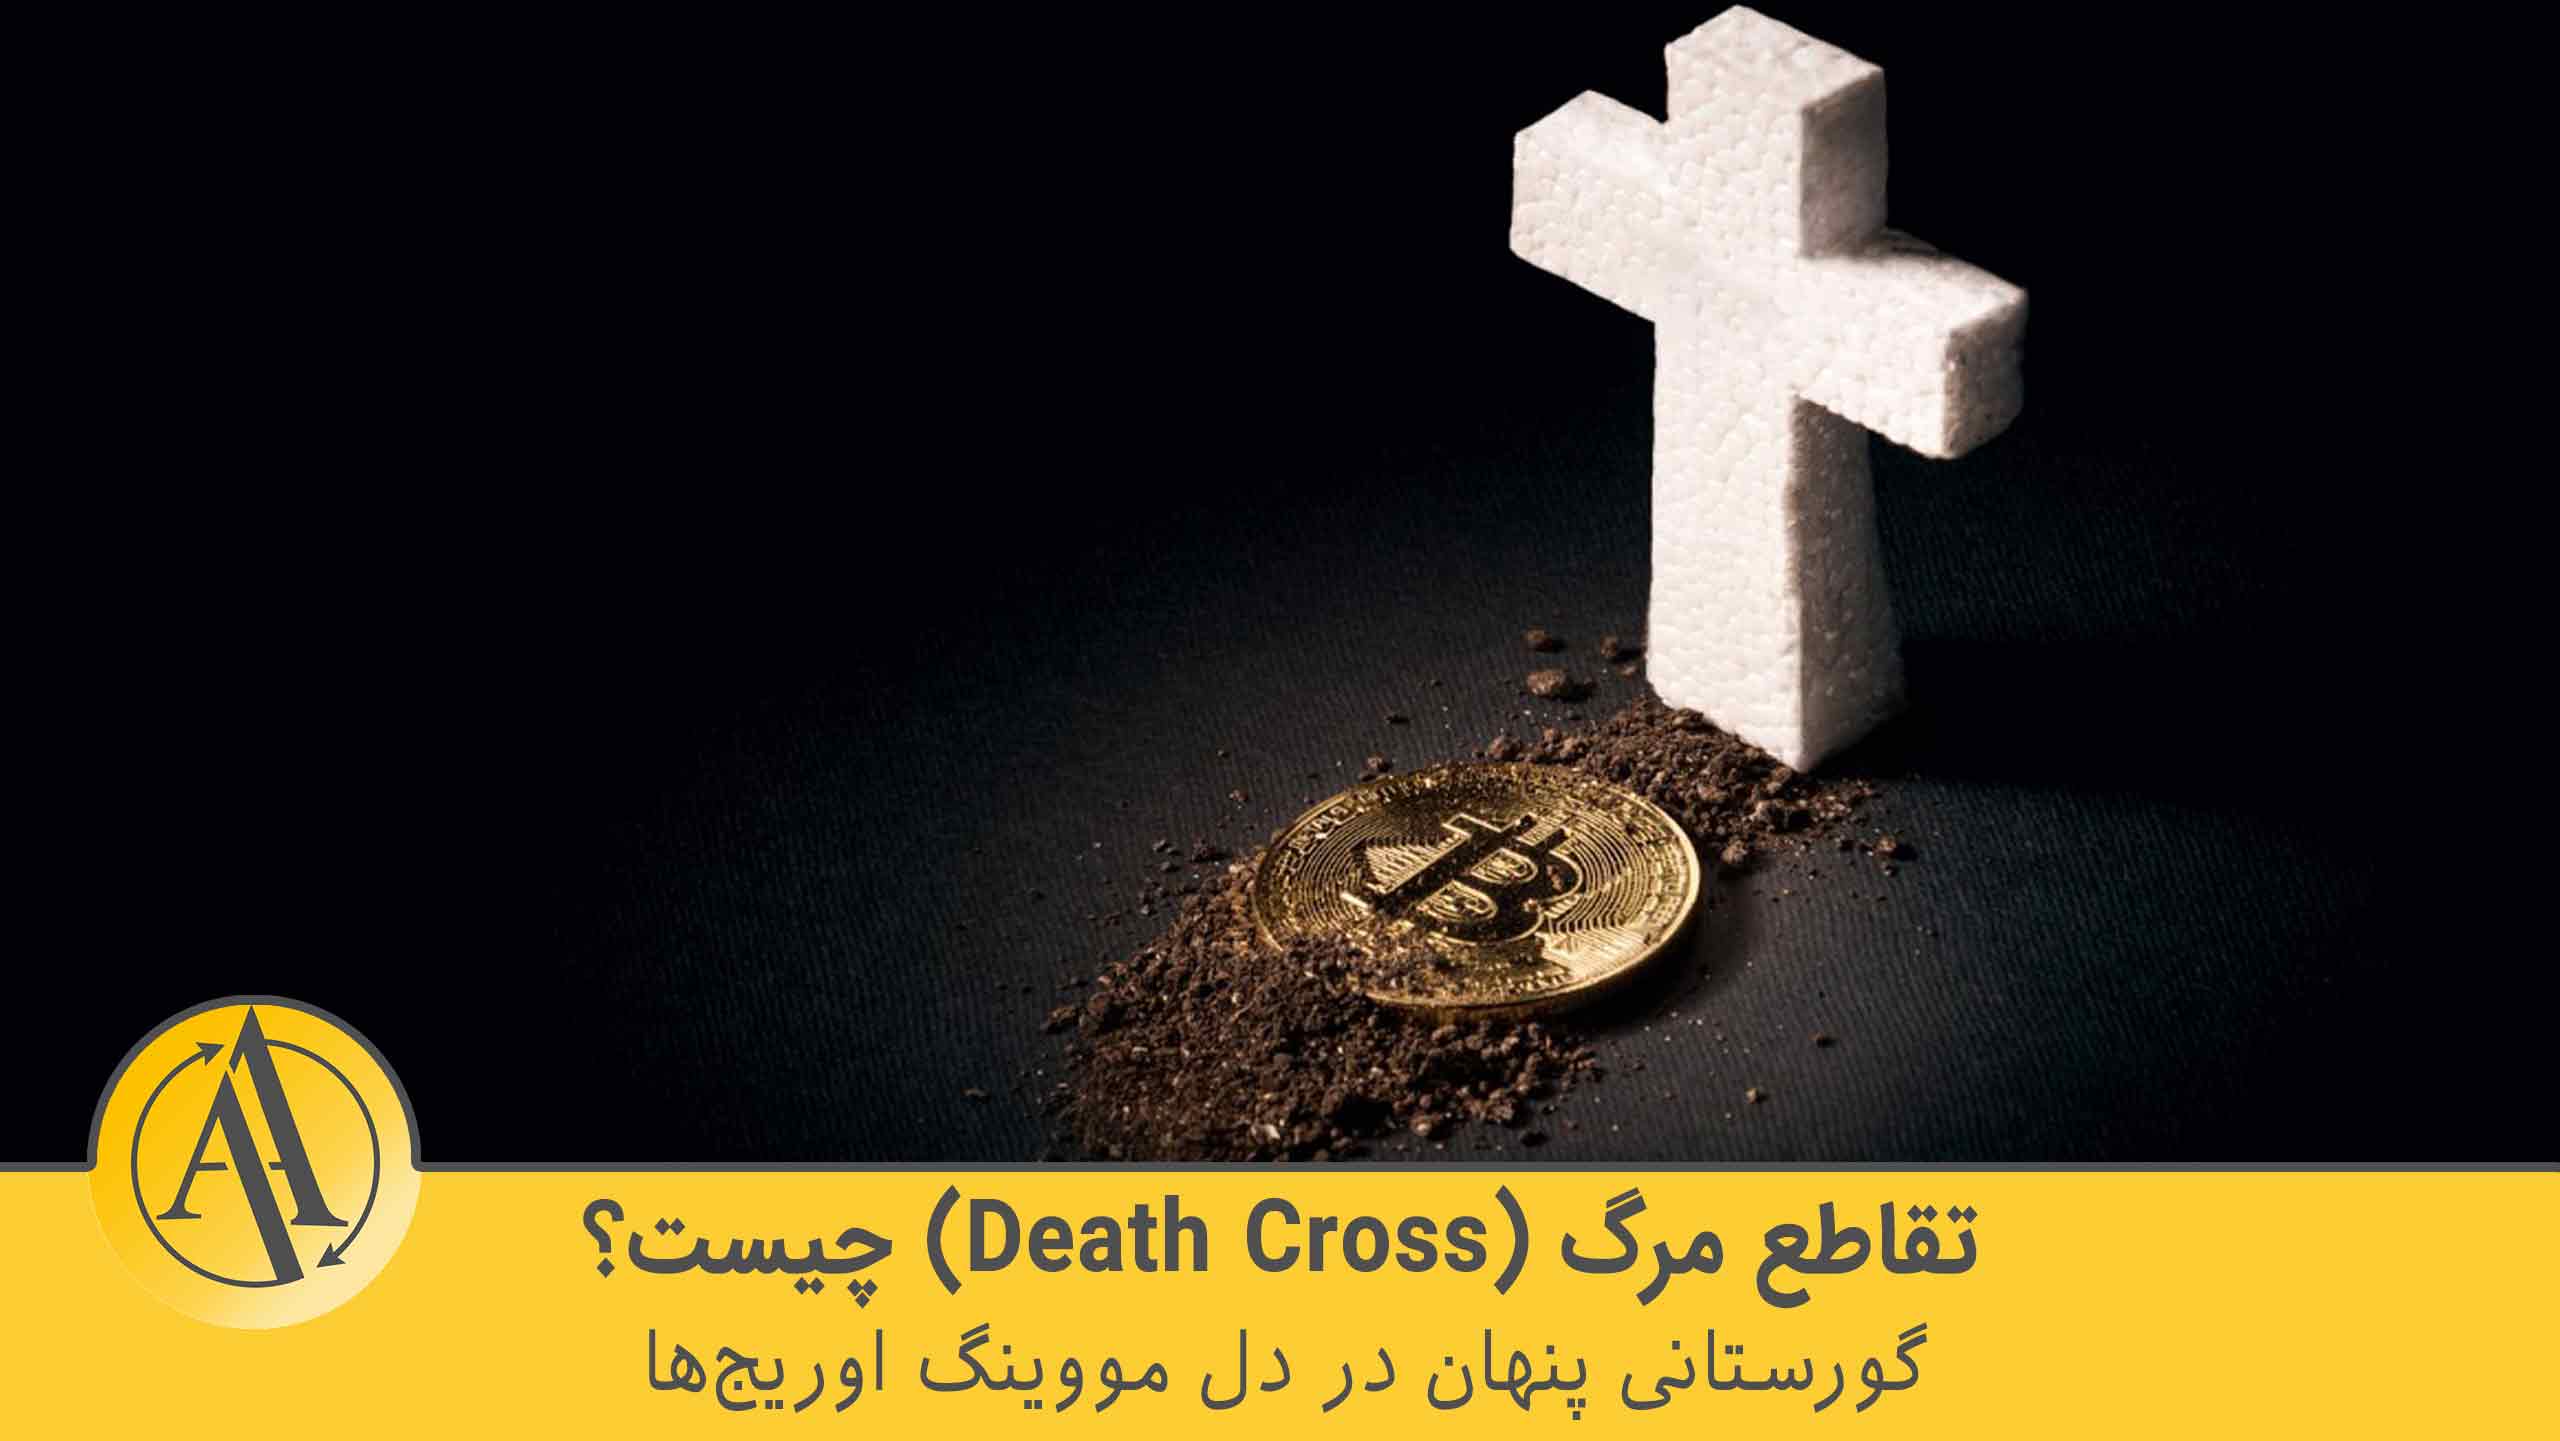 تقاطع مرگ (Death Cross) | آکادمی آینده